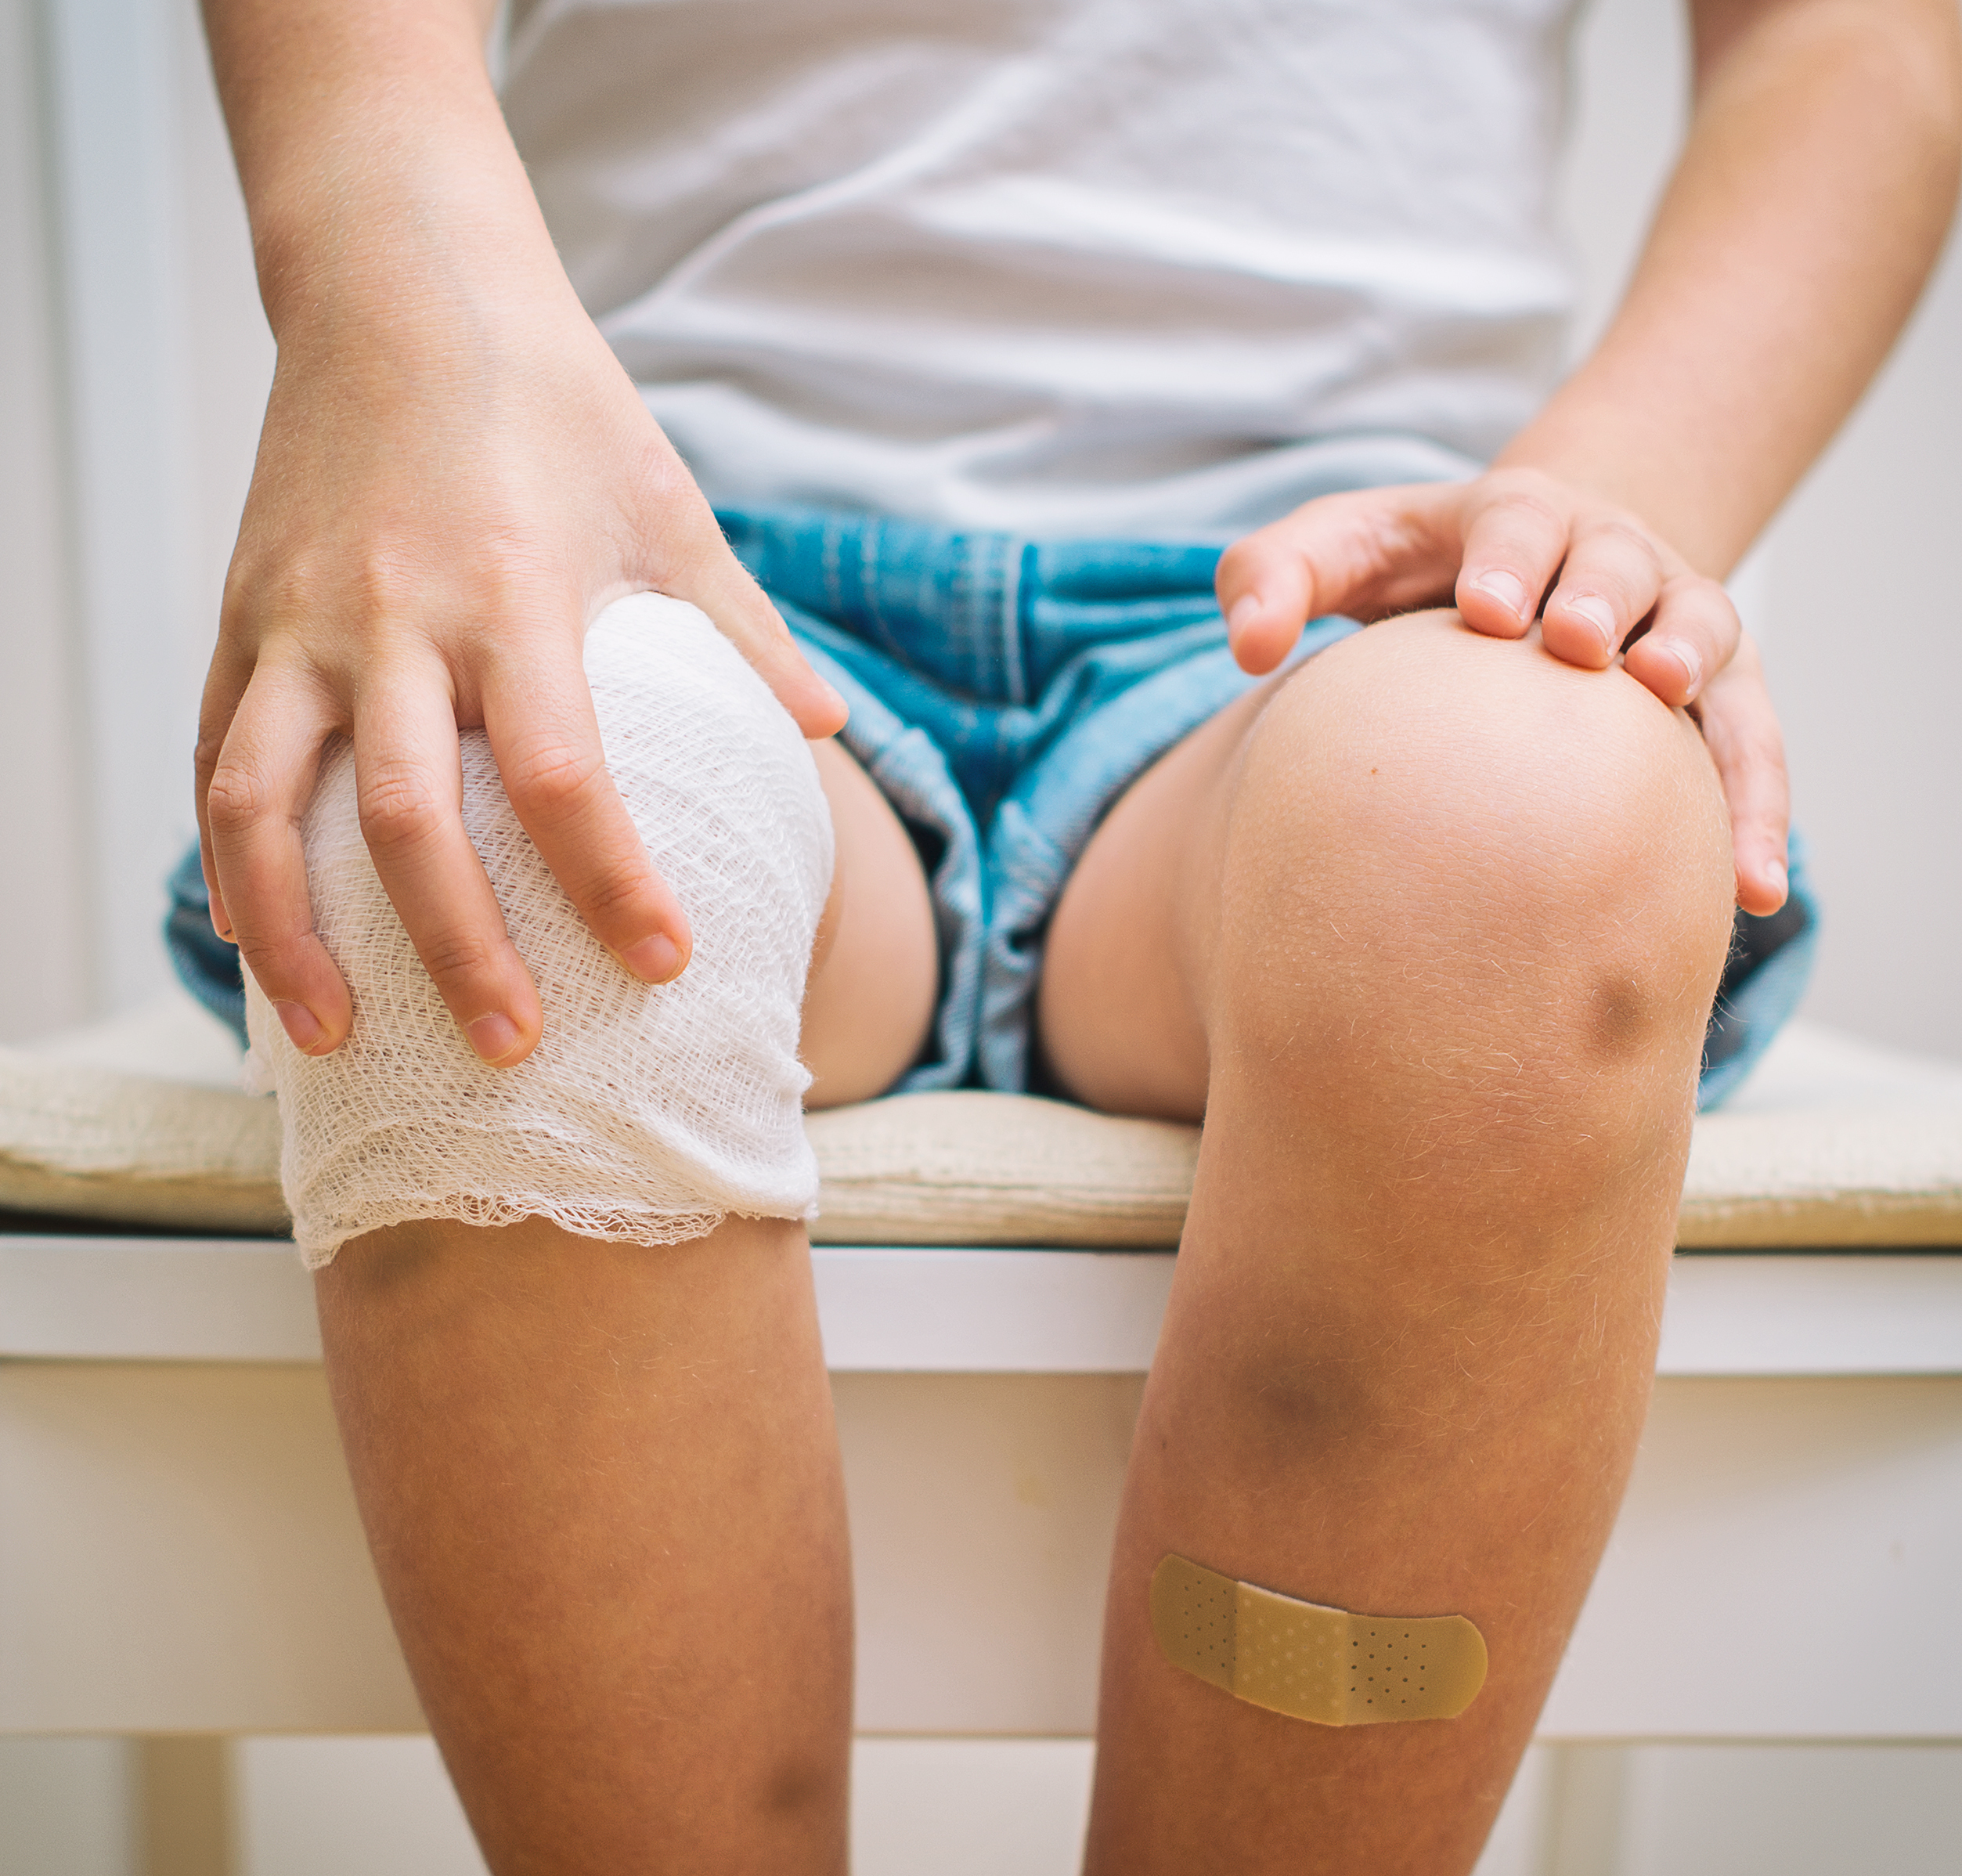 Schenkeveld Advocaten - Child,Knee,With,Adhesive,Bandage,,Bruise,And,Gauze,Bandage.